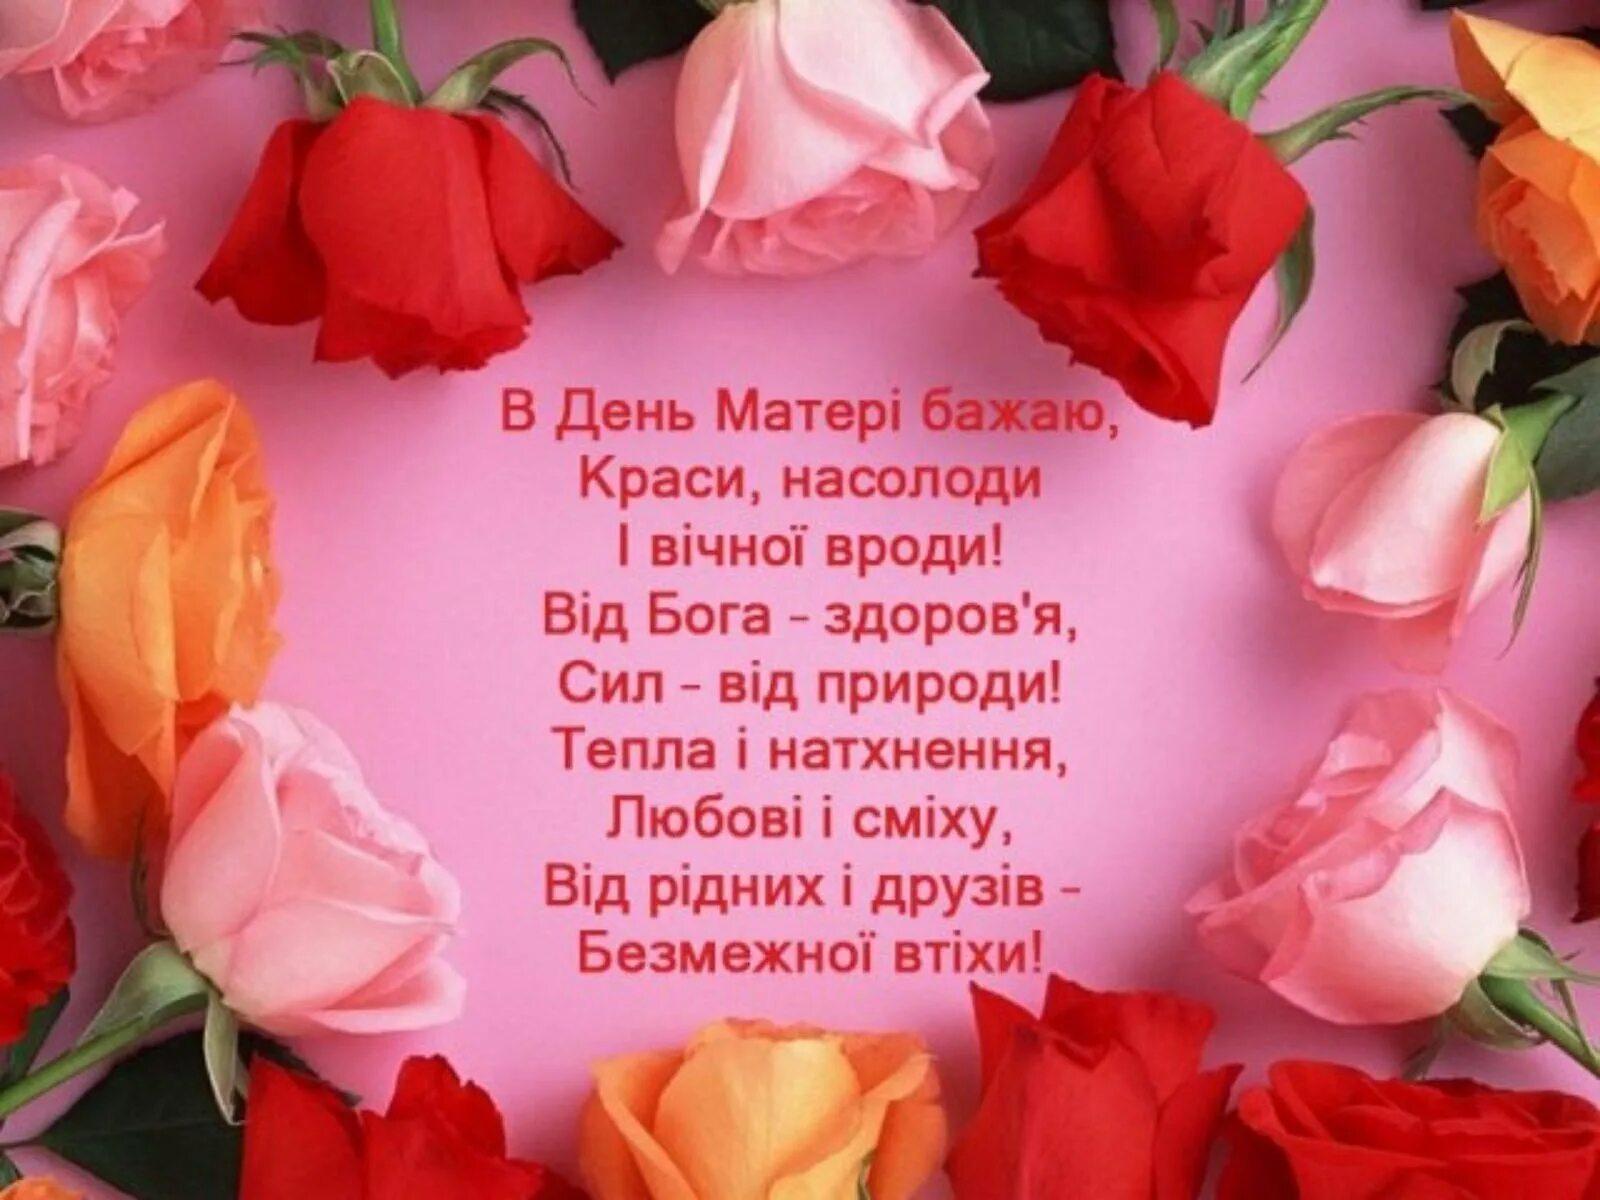 Поздоровлення з днем матері. Привітати маму з днем матері. З днем матери на украинском. З днем мами привітання.